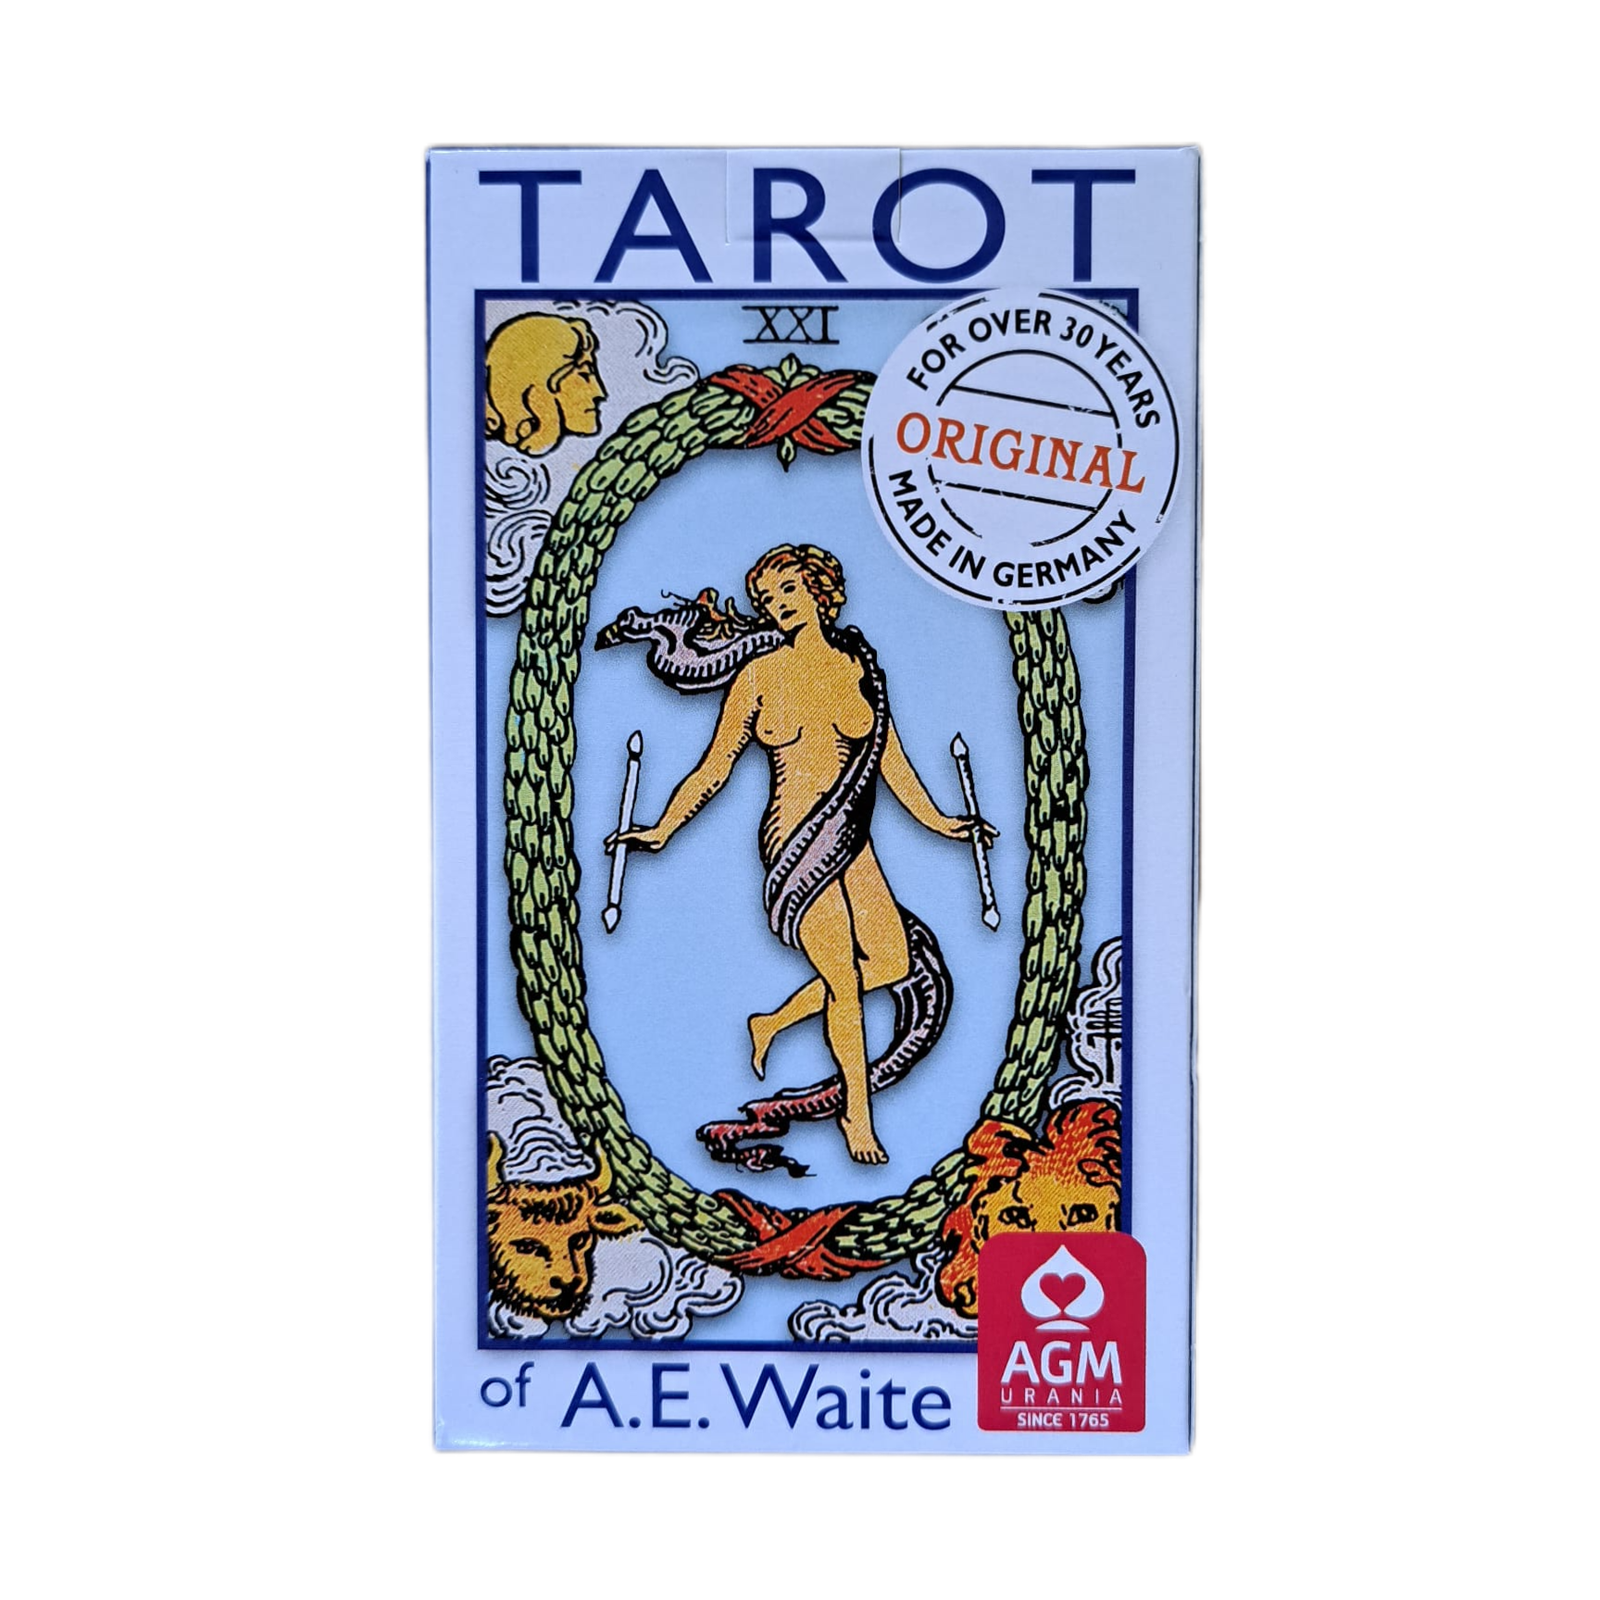 Tarot de A.E. Waite en español - Estándar - Templo de Buda